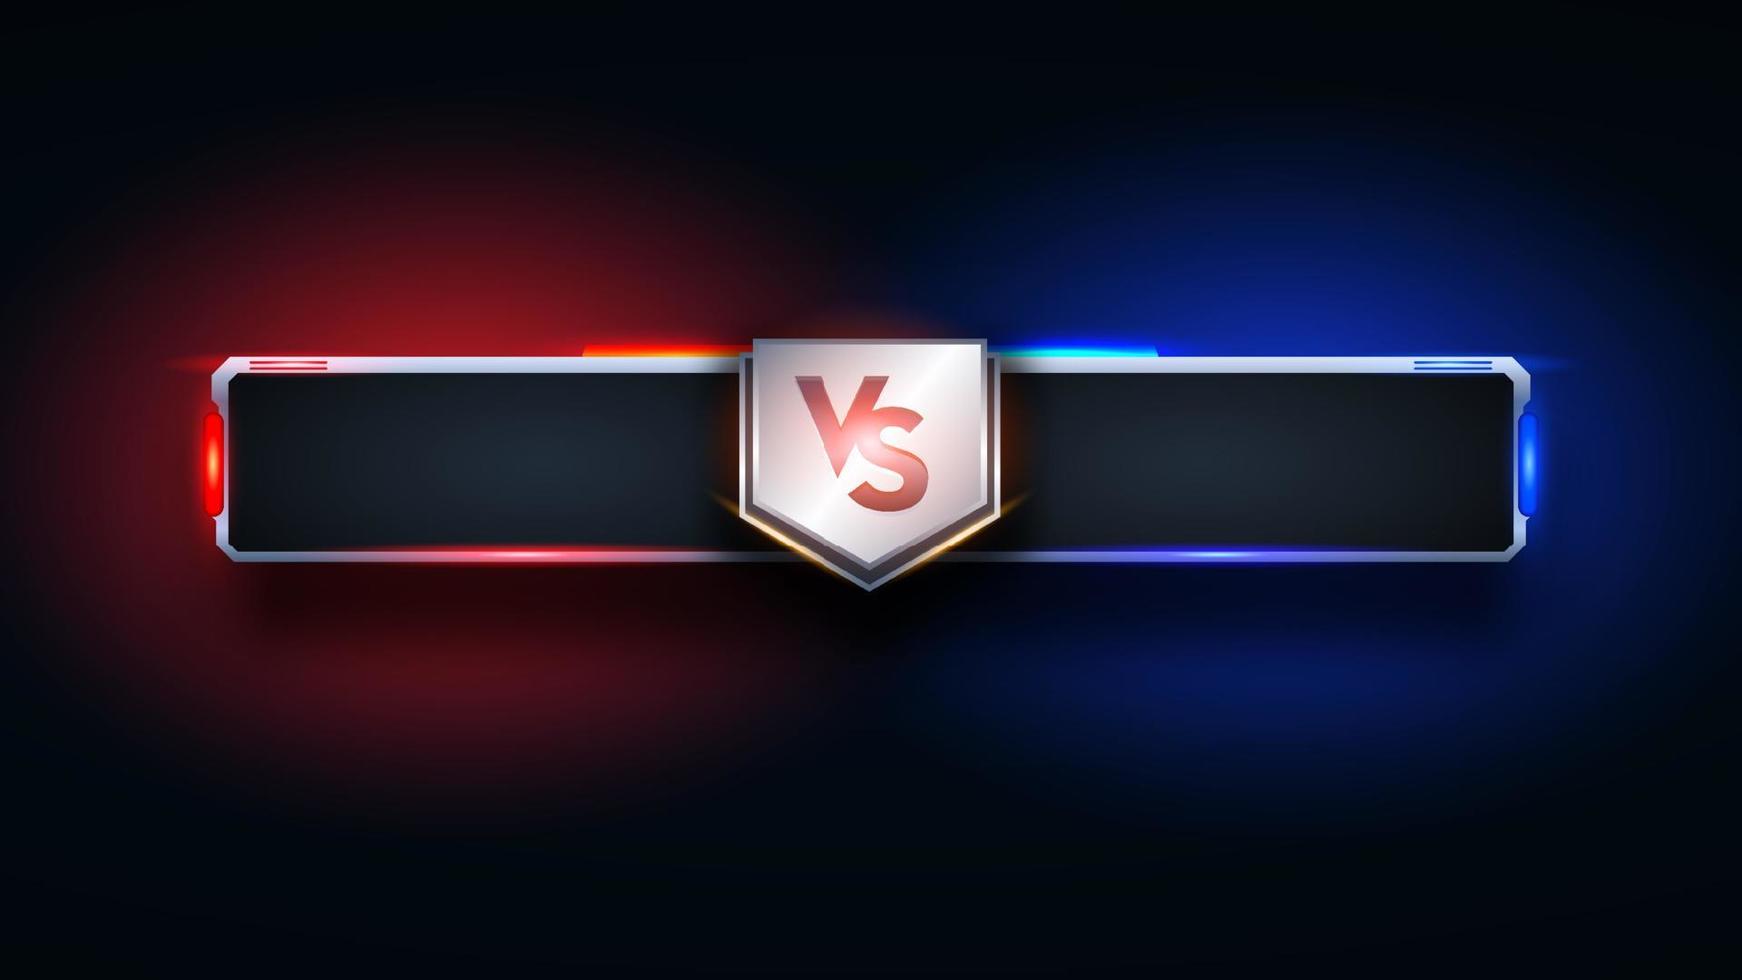 vs versus battle headline plantilla de banner moderno, fondo brillante rojo y azul, juego de lucha, interfaz de juego vector